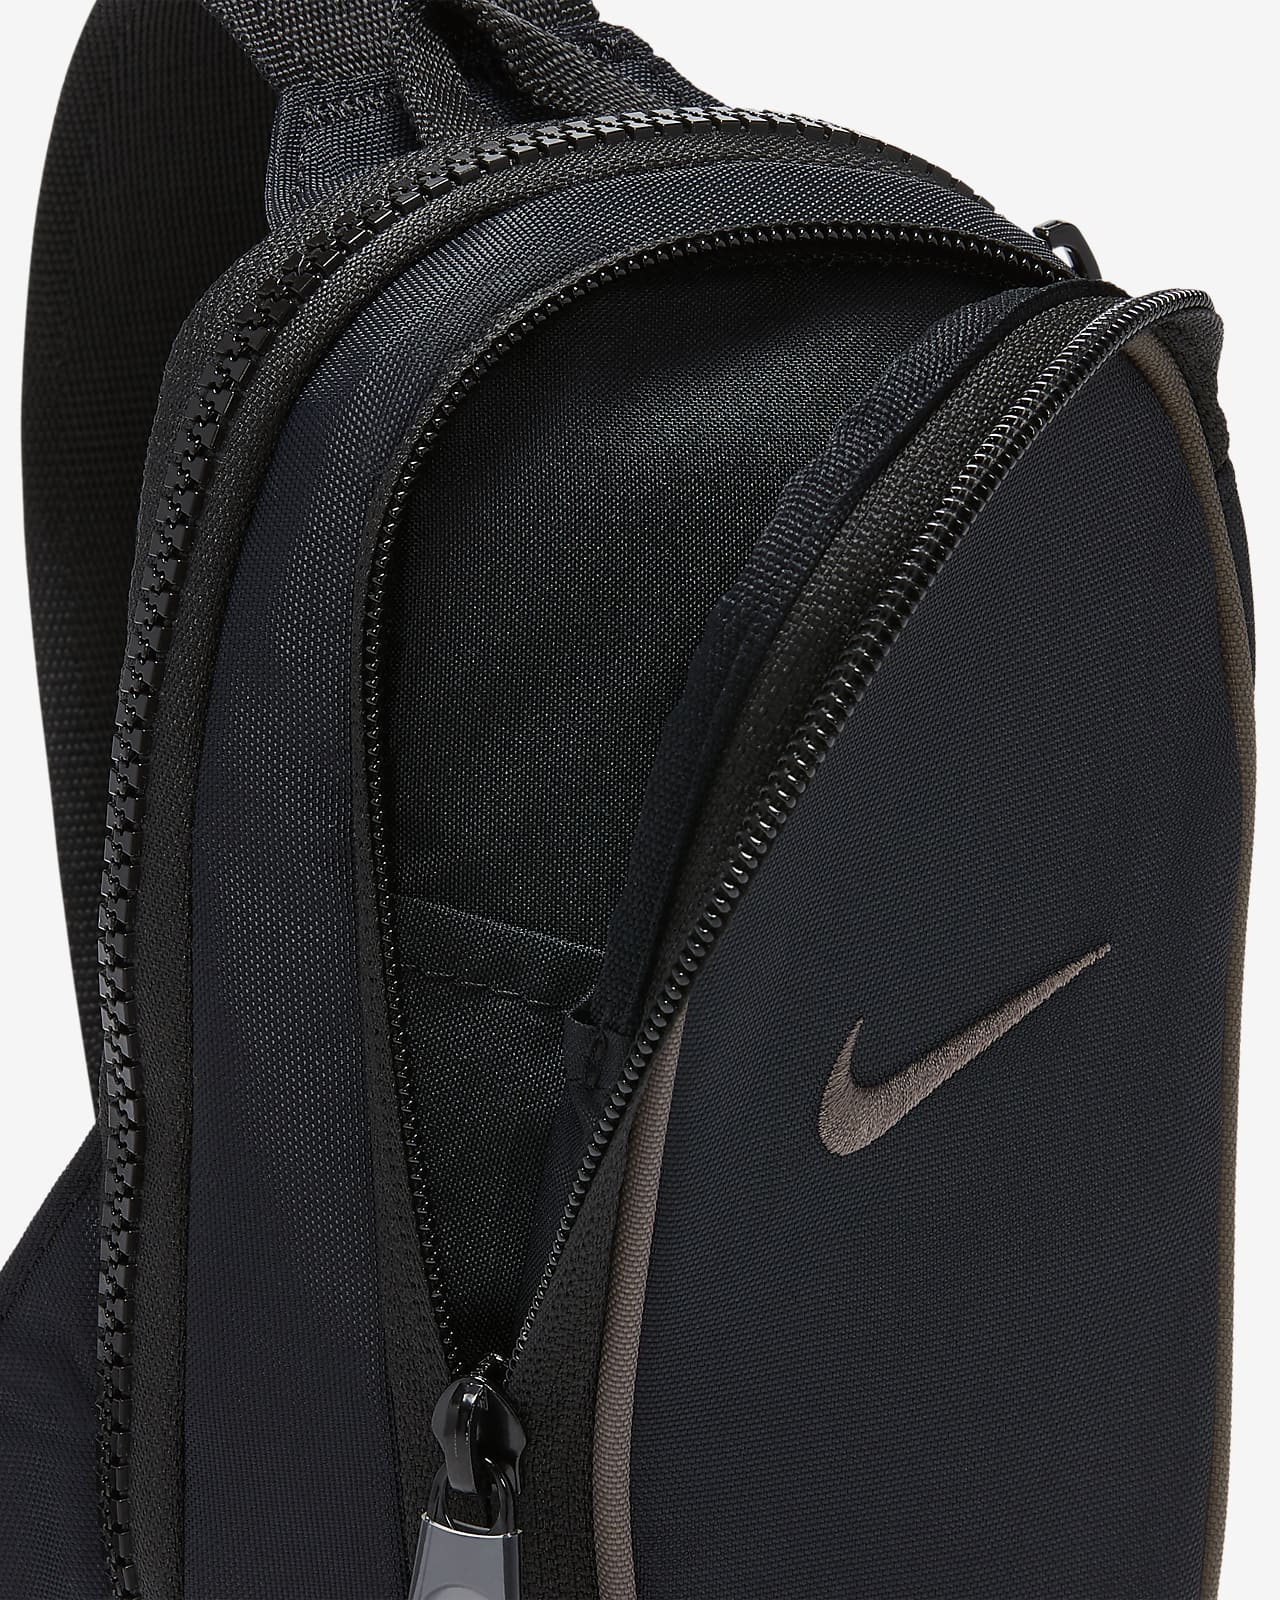 Nike - Advance - Sac bandoulière - Noir